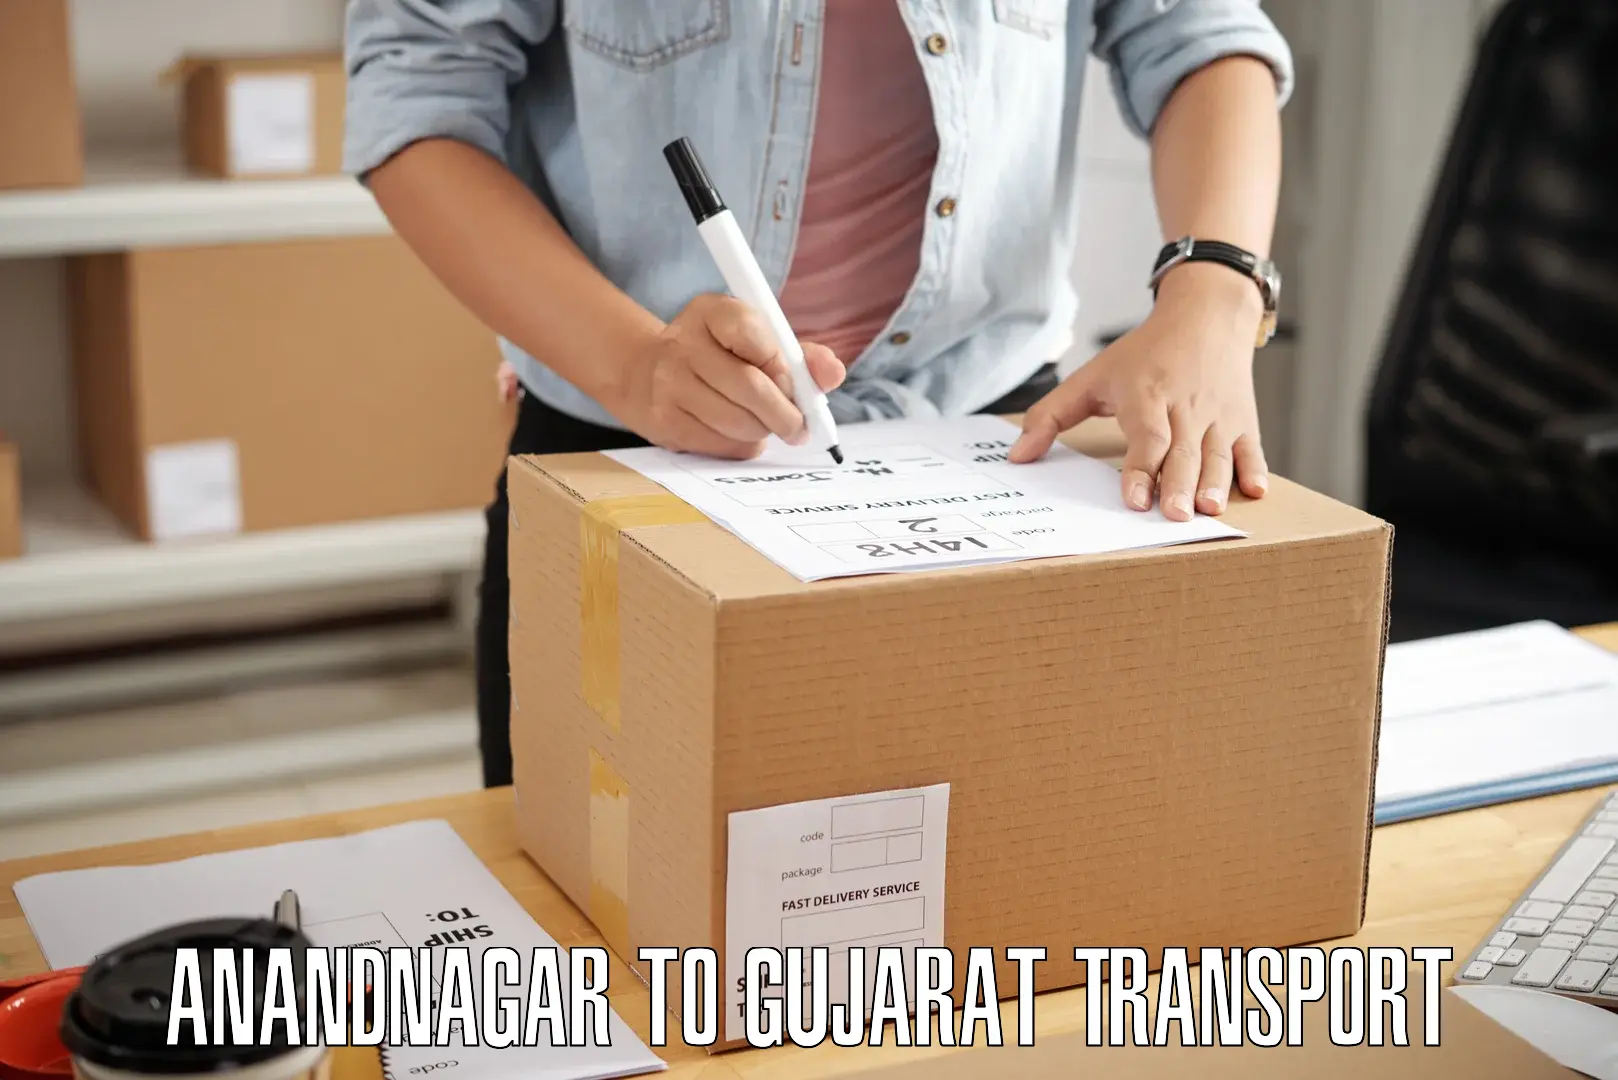 Cargo train transport services in Anandnagar to Gujarat